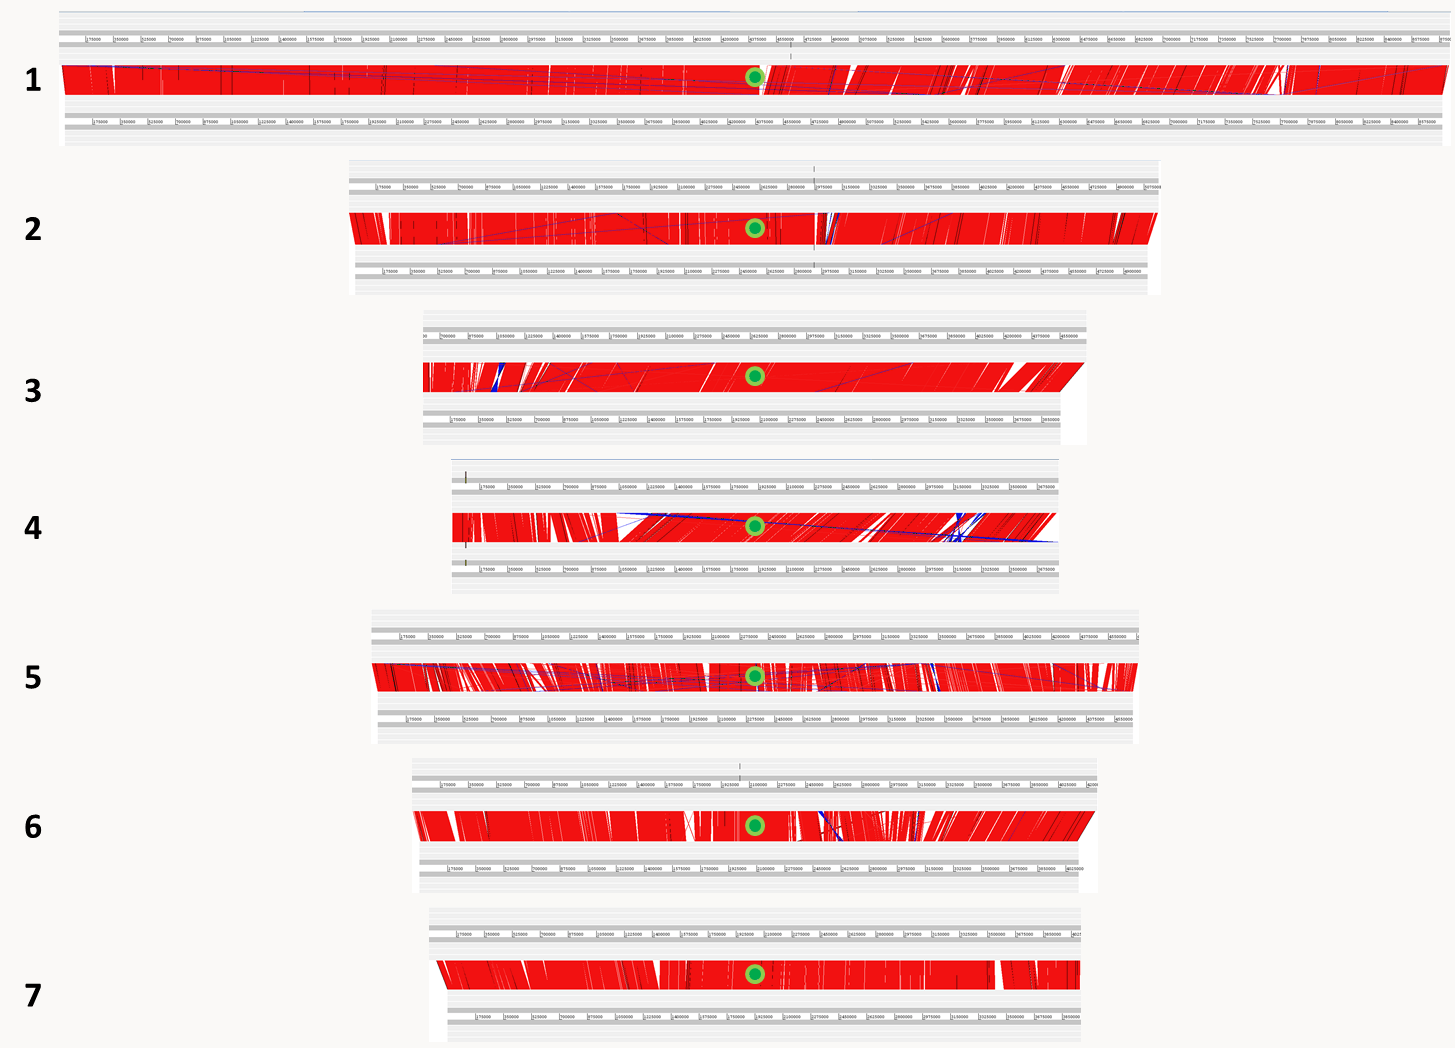 comparaison entre les sept chromosomes nucléaires des génomes de Podospora anserina (en haut) et Podospora comata (en bas). En rouge, les séquences très similaires, en bleu les séquences inversées ou transloquées et les triangles blancs représentent des indels. Les points verts sont les centromères.